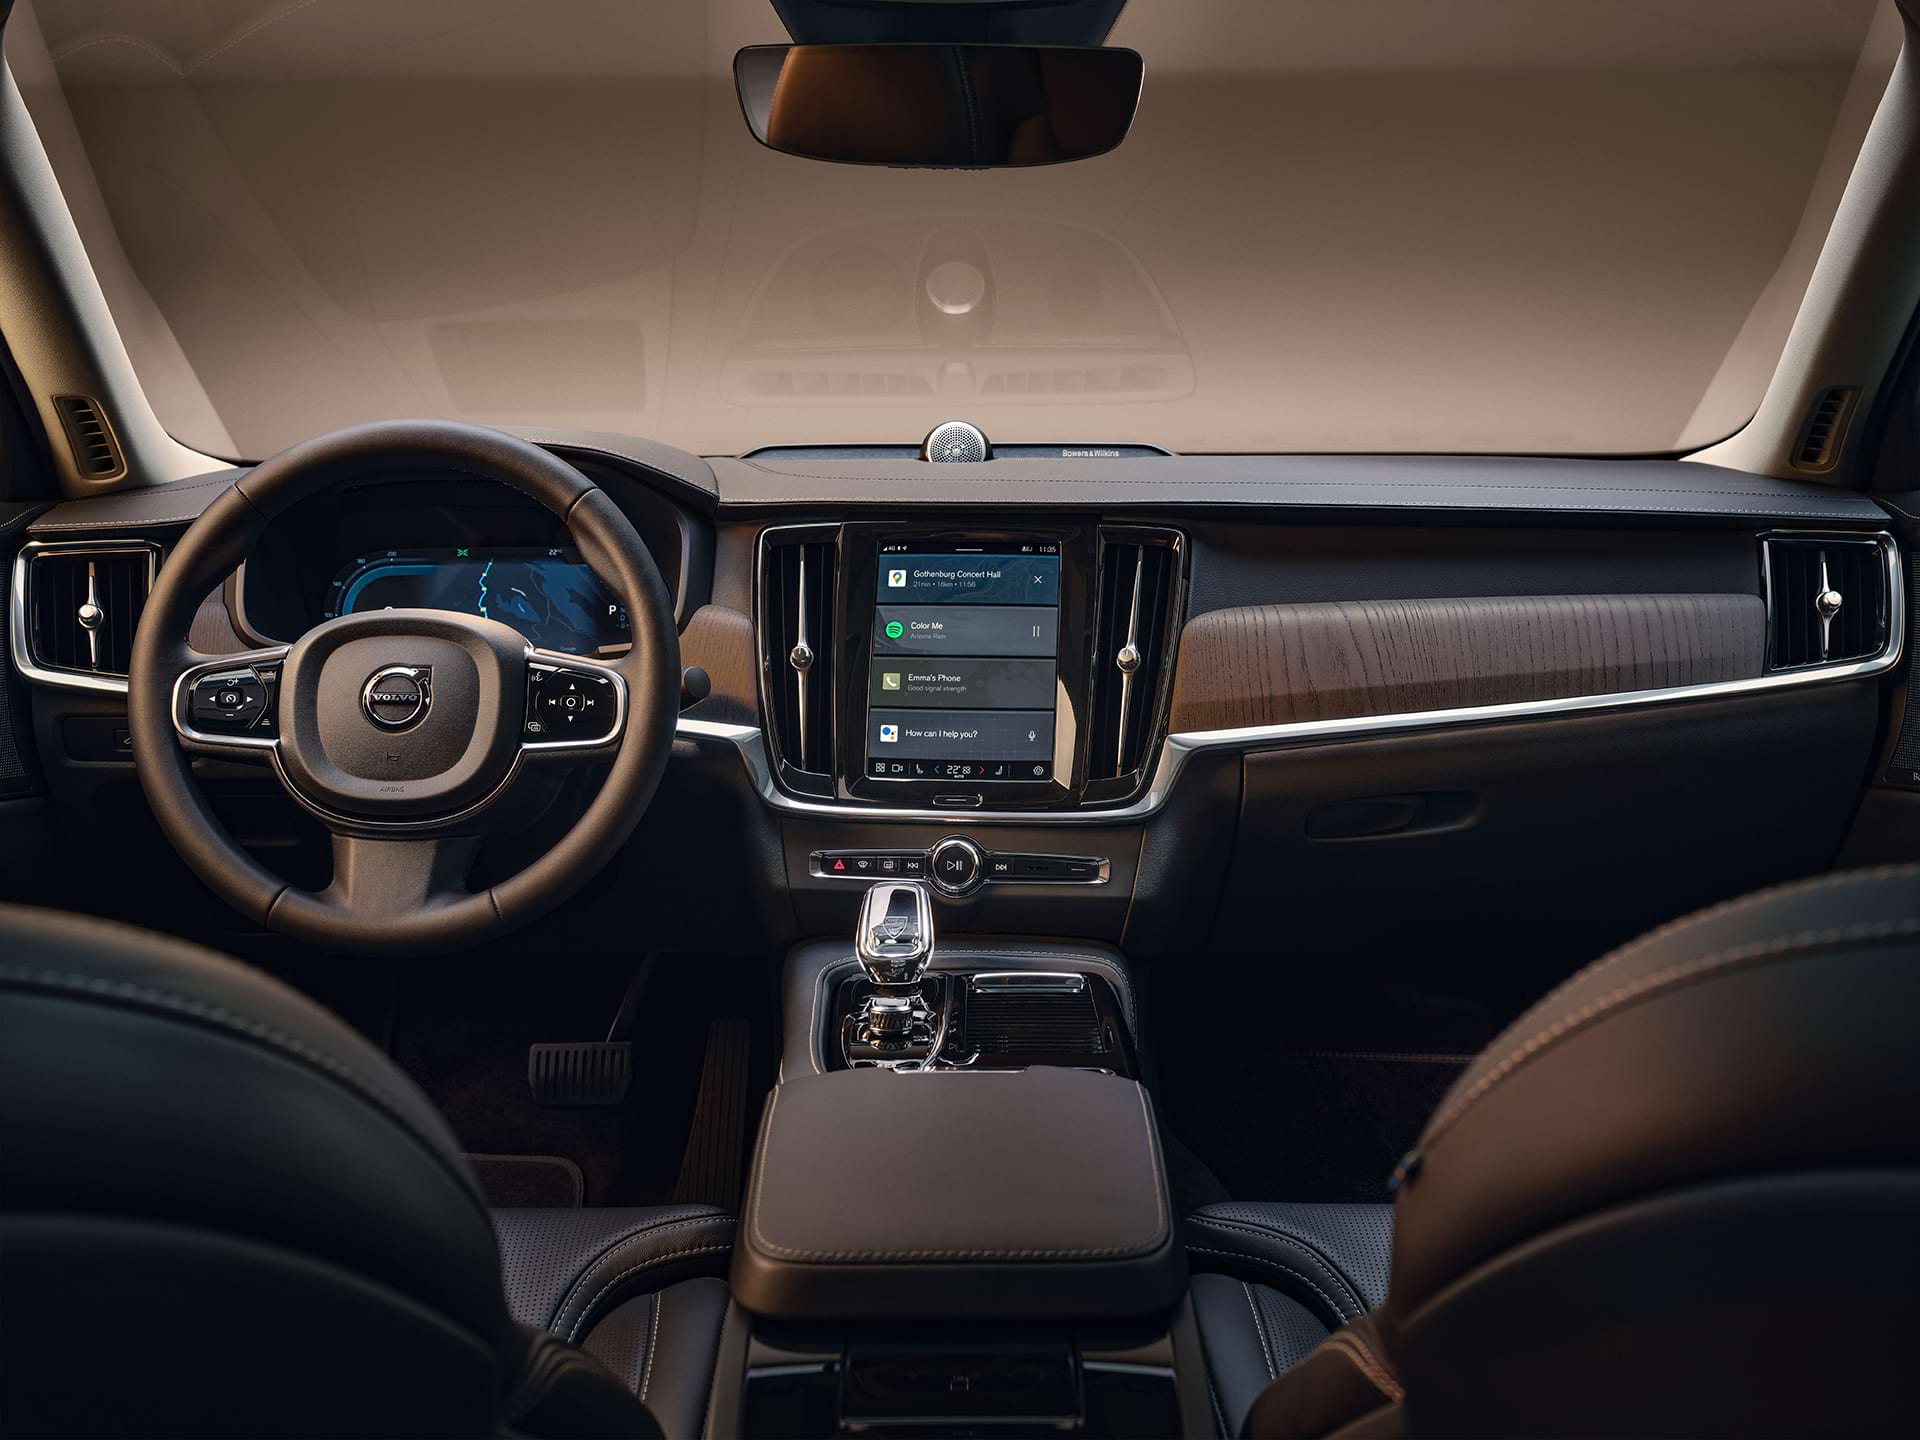 Kontrolna ploča, središnji zaslon, mjenjač, zaslon za vozača i upravljač Volvo limuzine.